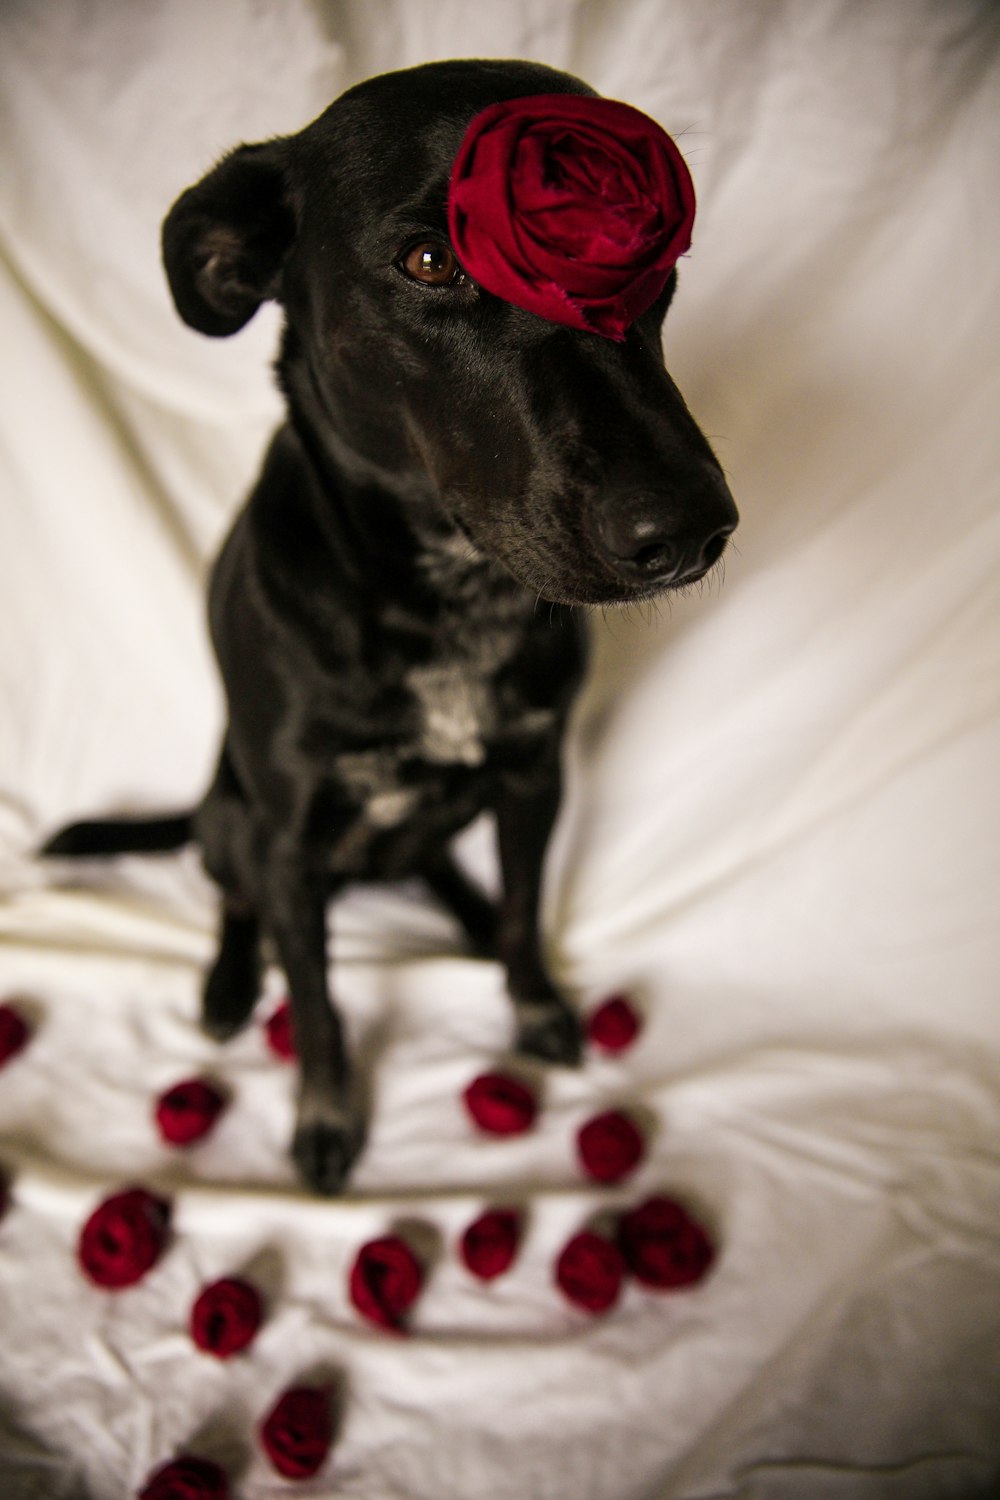 Dog Rose Pictures | Download Free Images on Unsplash